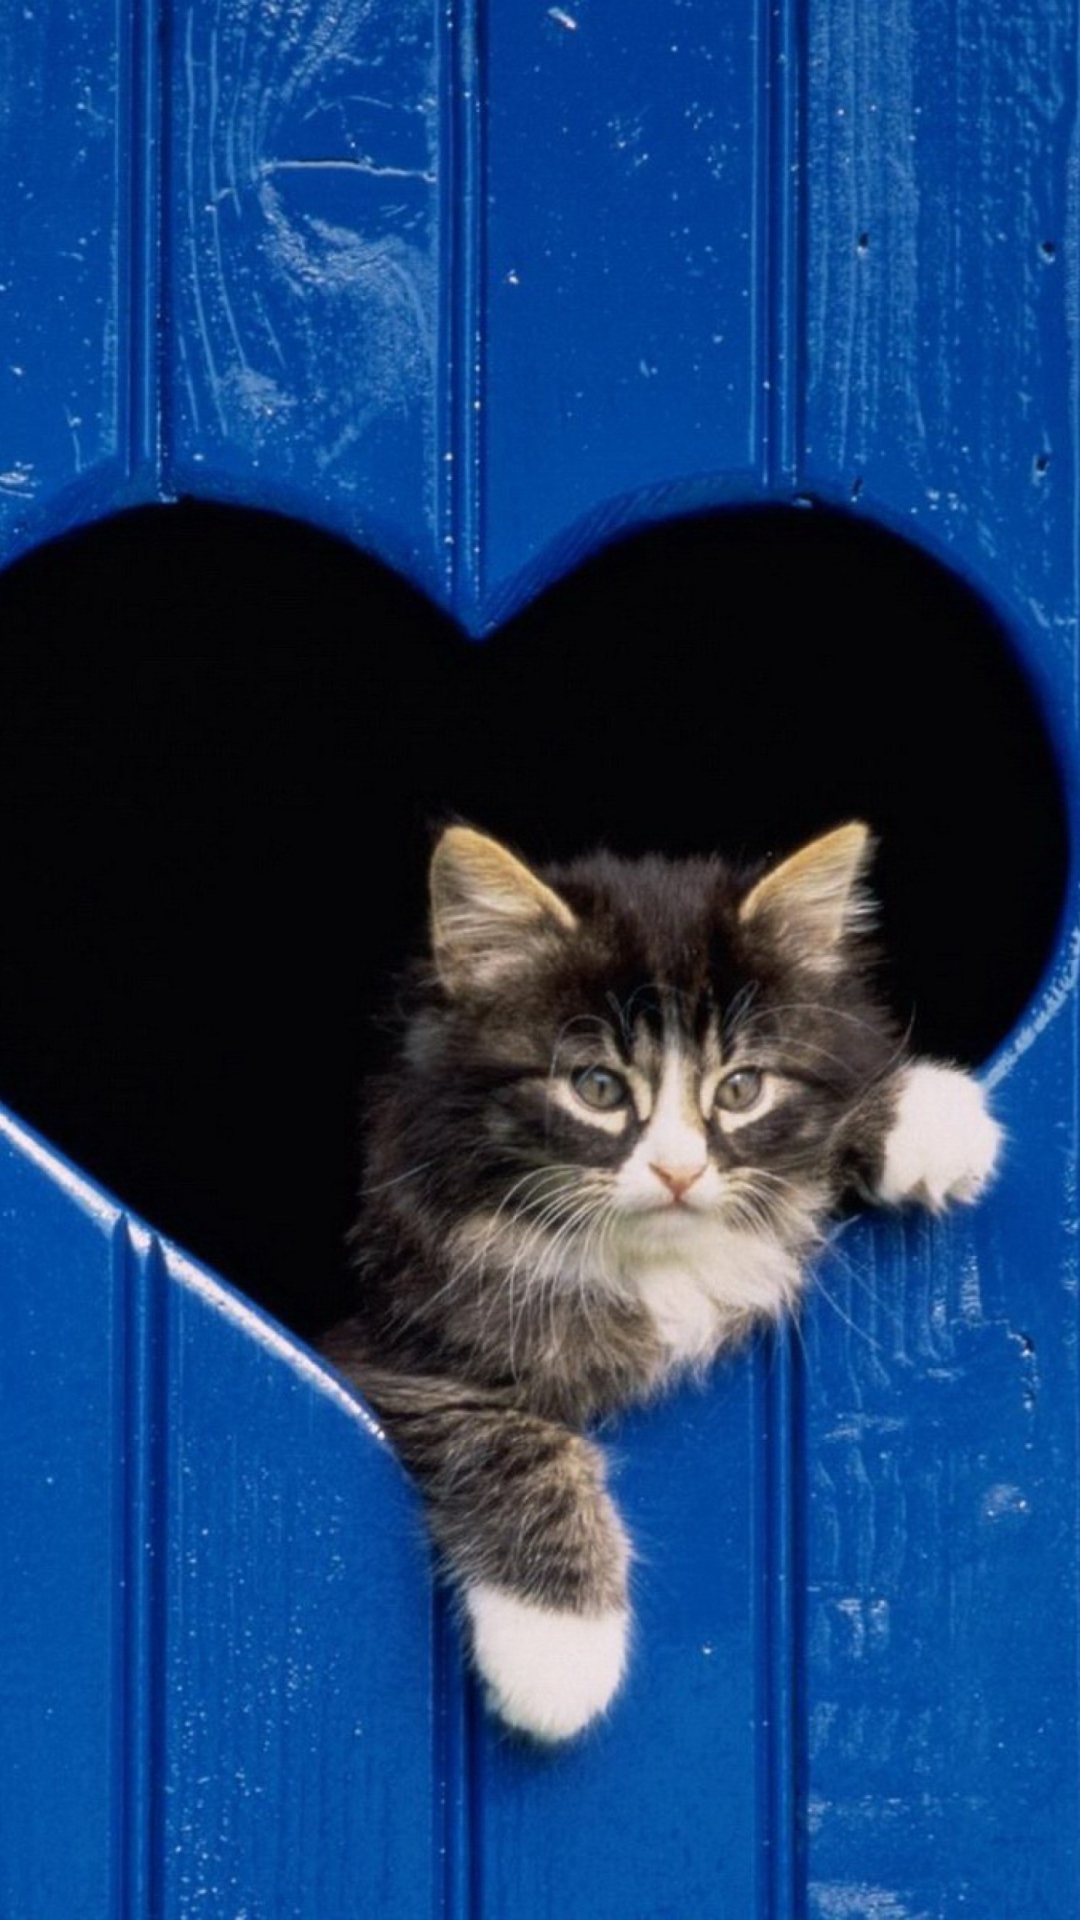 Das Cat In Heart-Shaped Window Wallpaper 1080x1920